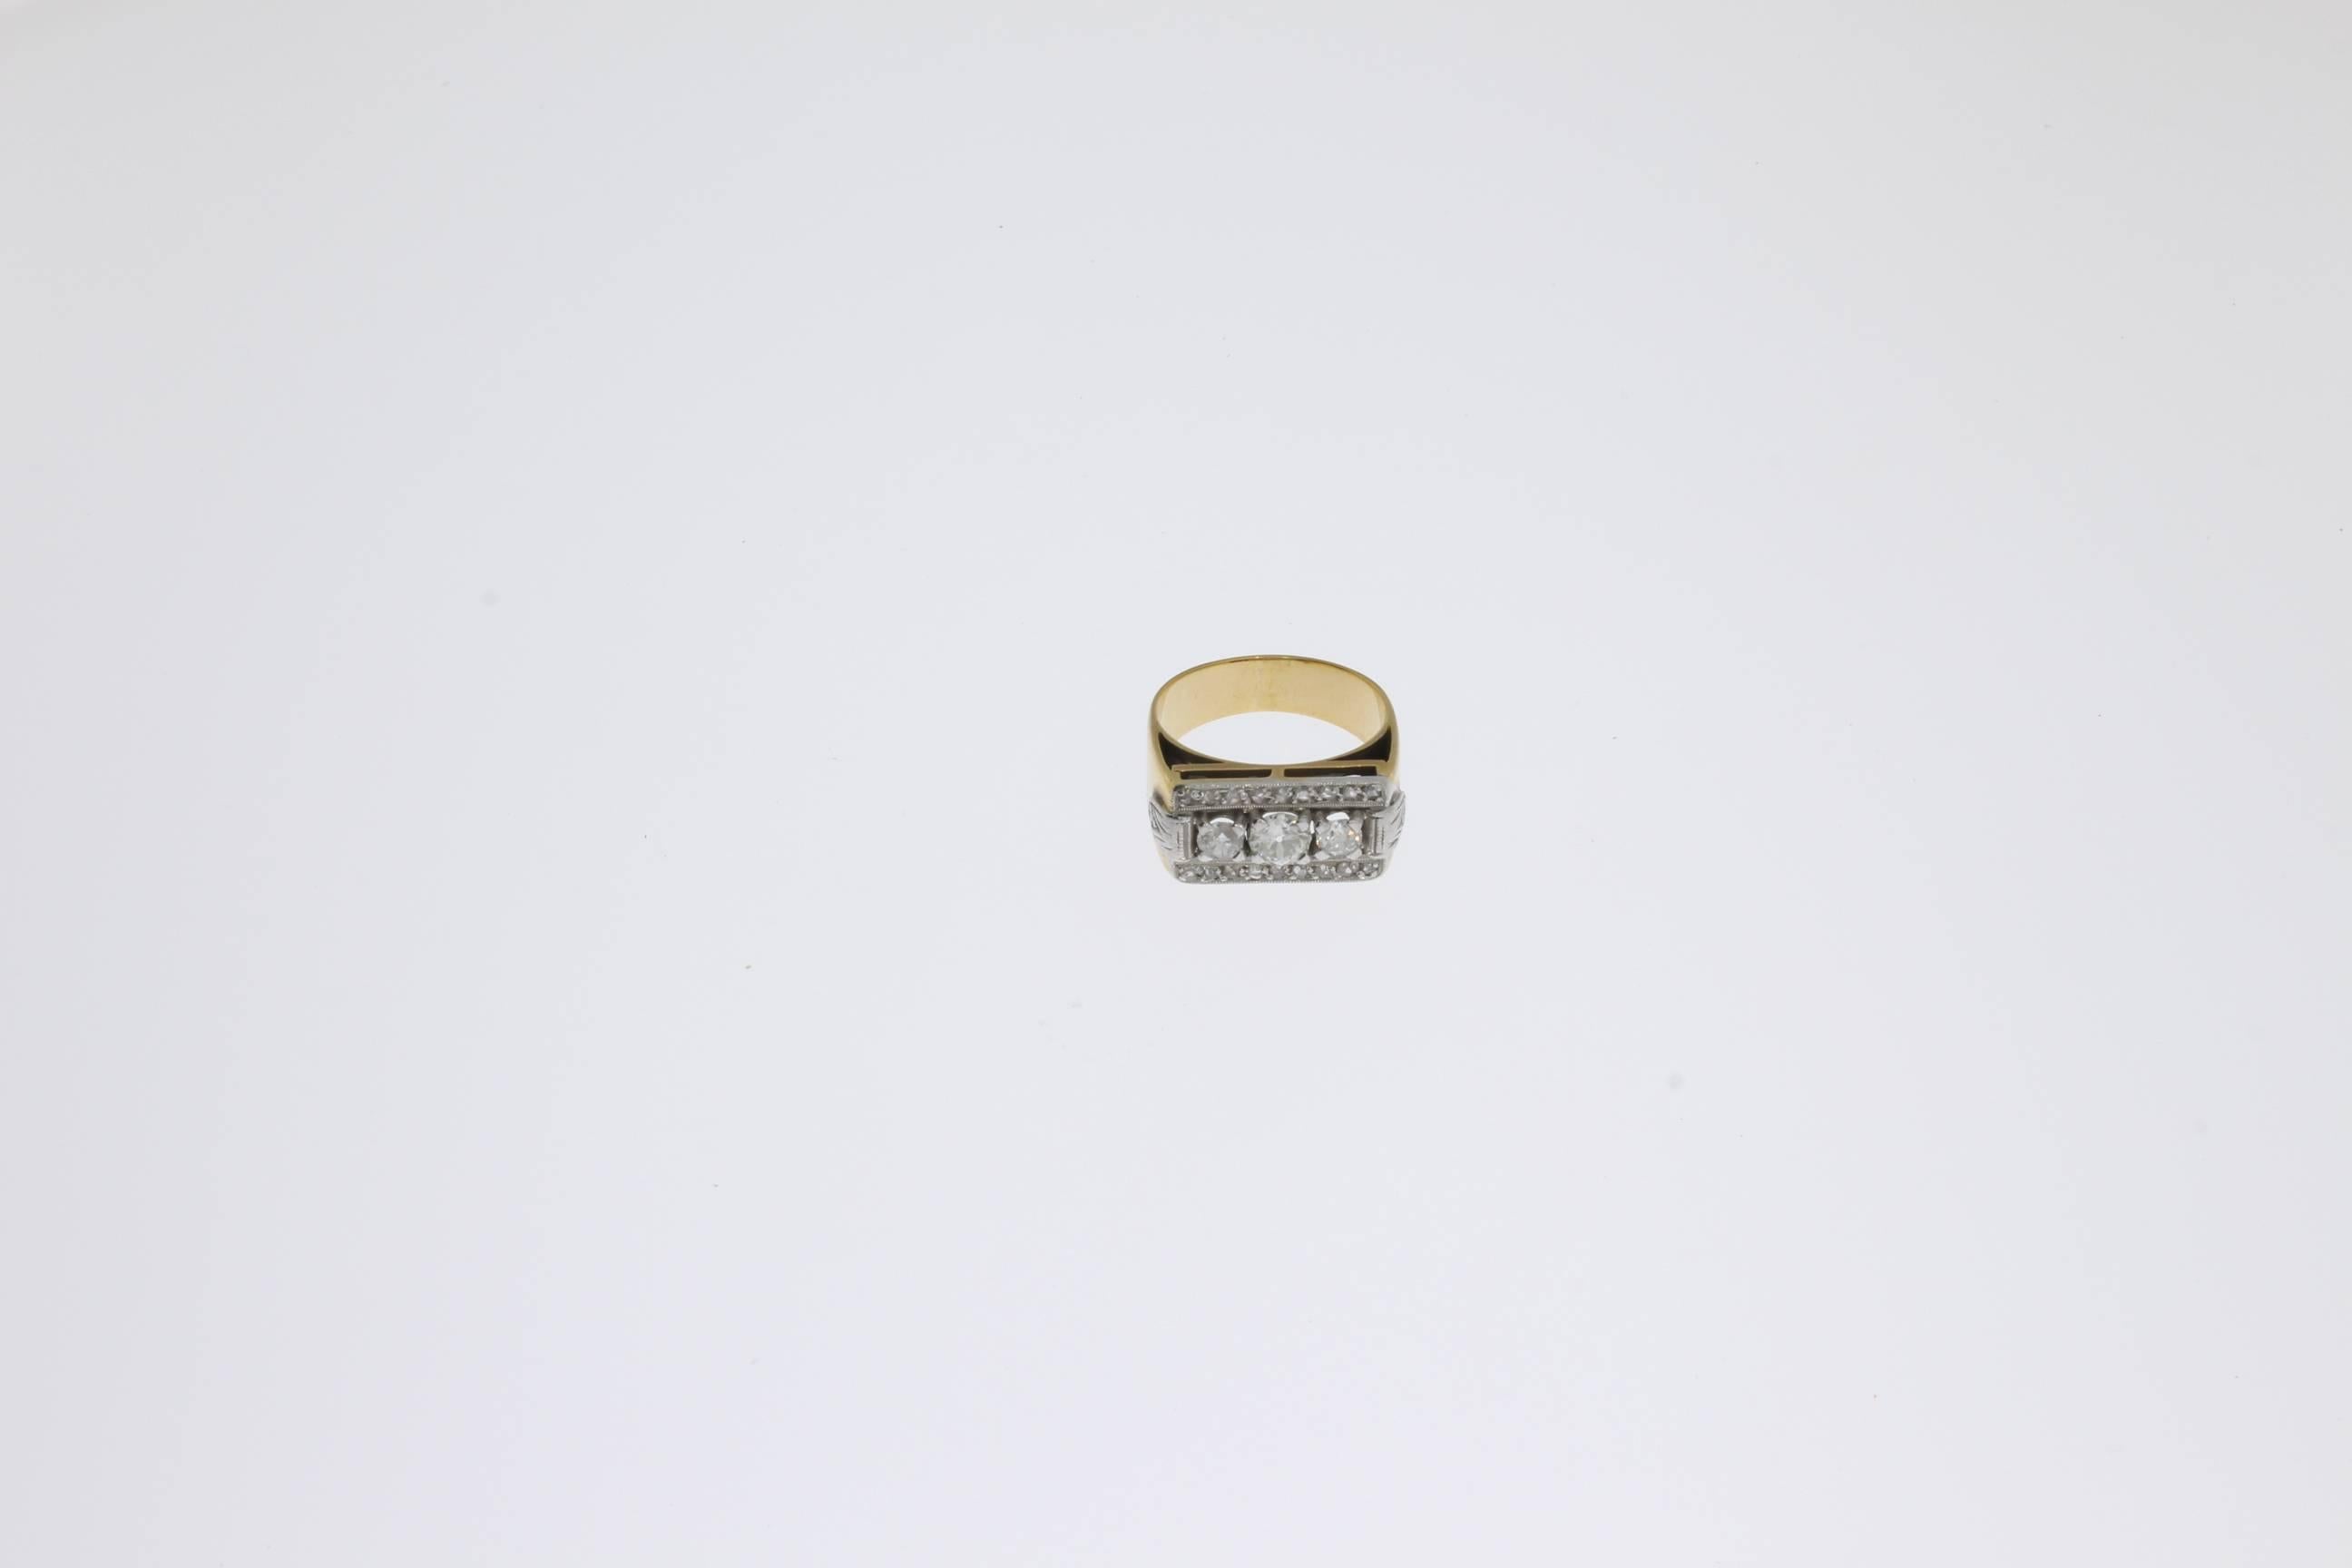 Art Deco, besetzt mit 3 zentralen Diamanten im Brillantschliff von insgesamt ca. 0,56 ct. in Zackenfassung. Verziert mit 16 kleinen Diamanten im Brillantschliff von ca. 0,18 ct. Montiert in 18 K Gelb- und Weißgold. Millegrain-Einstellung.